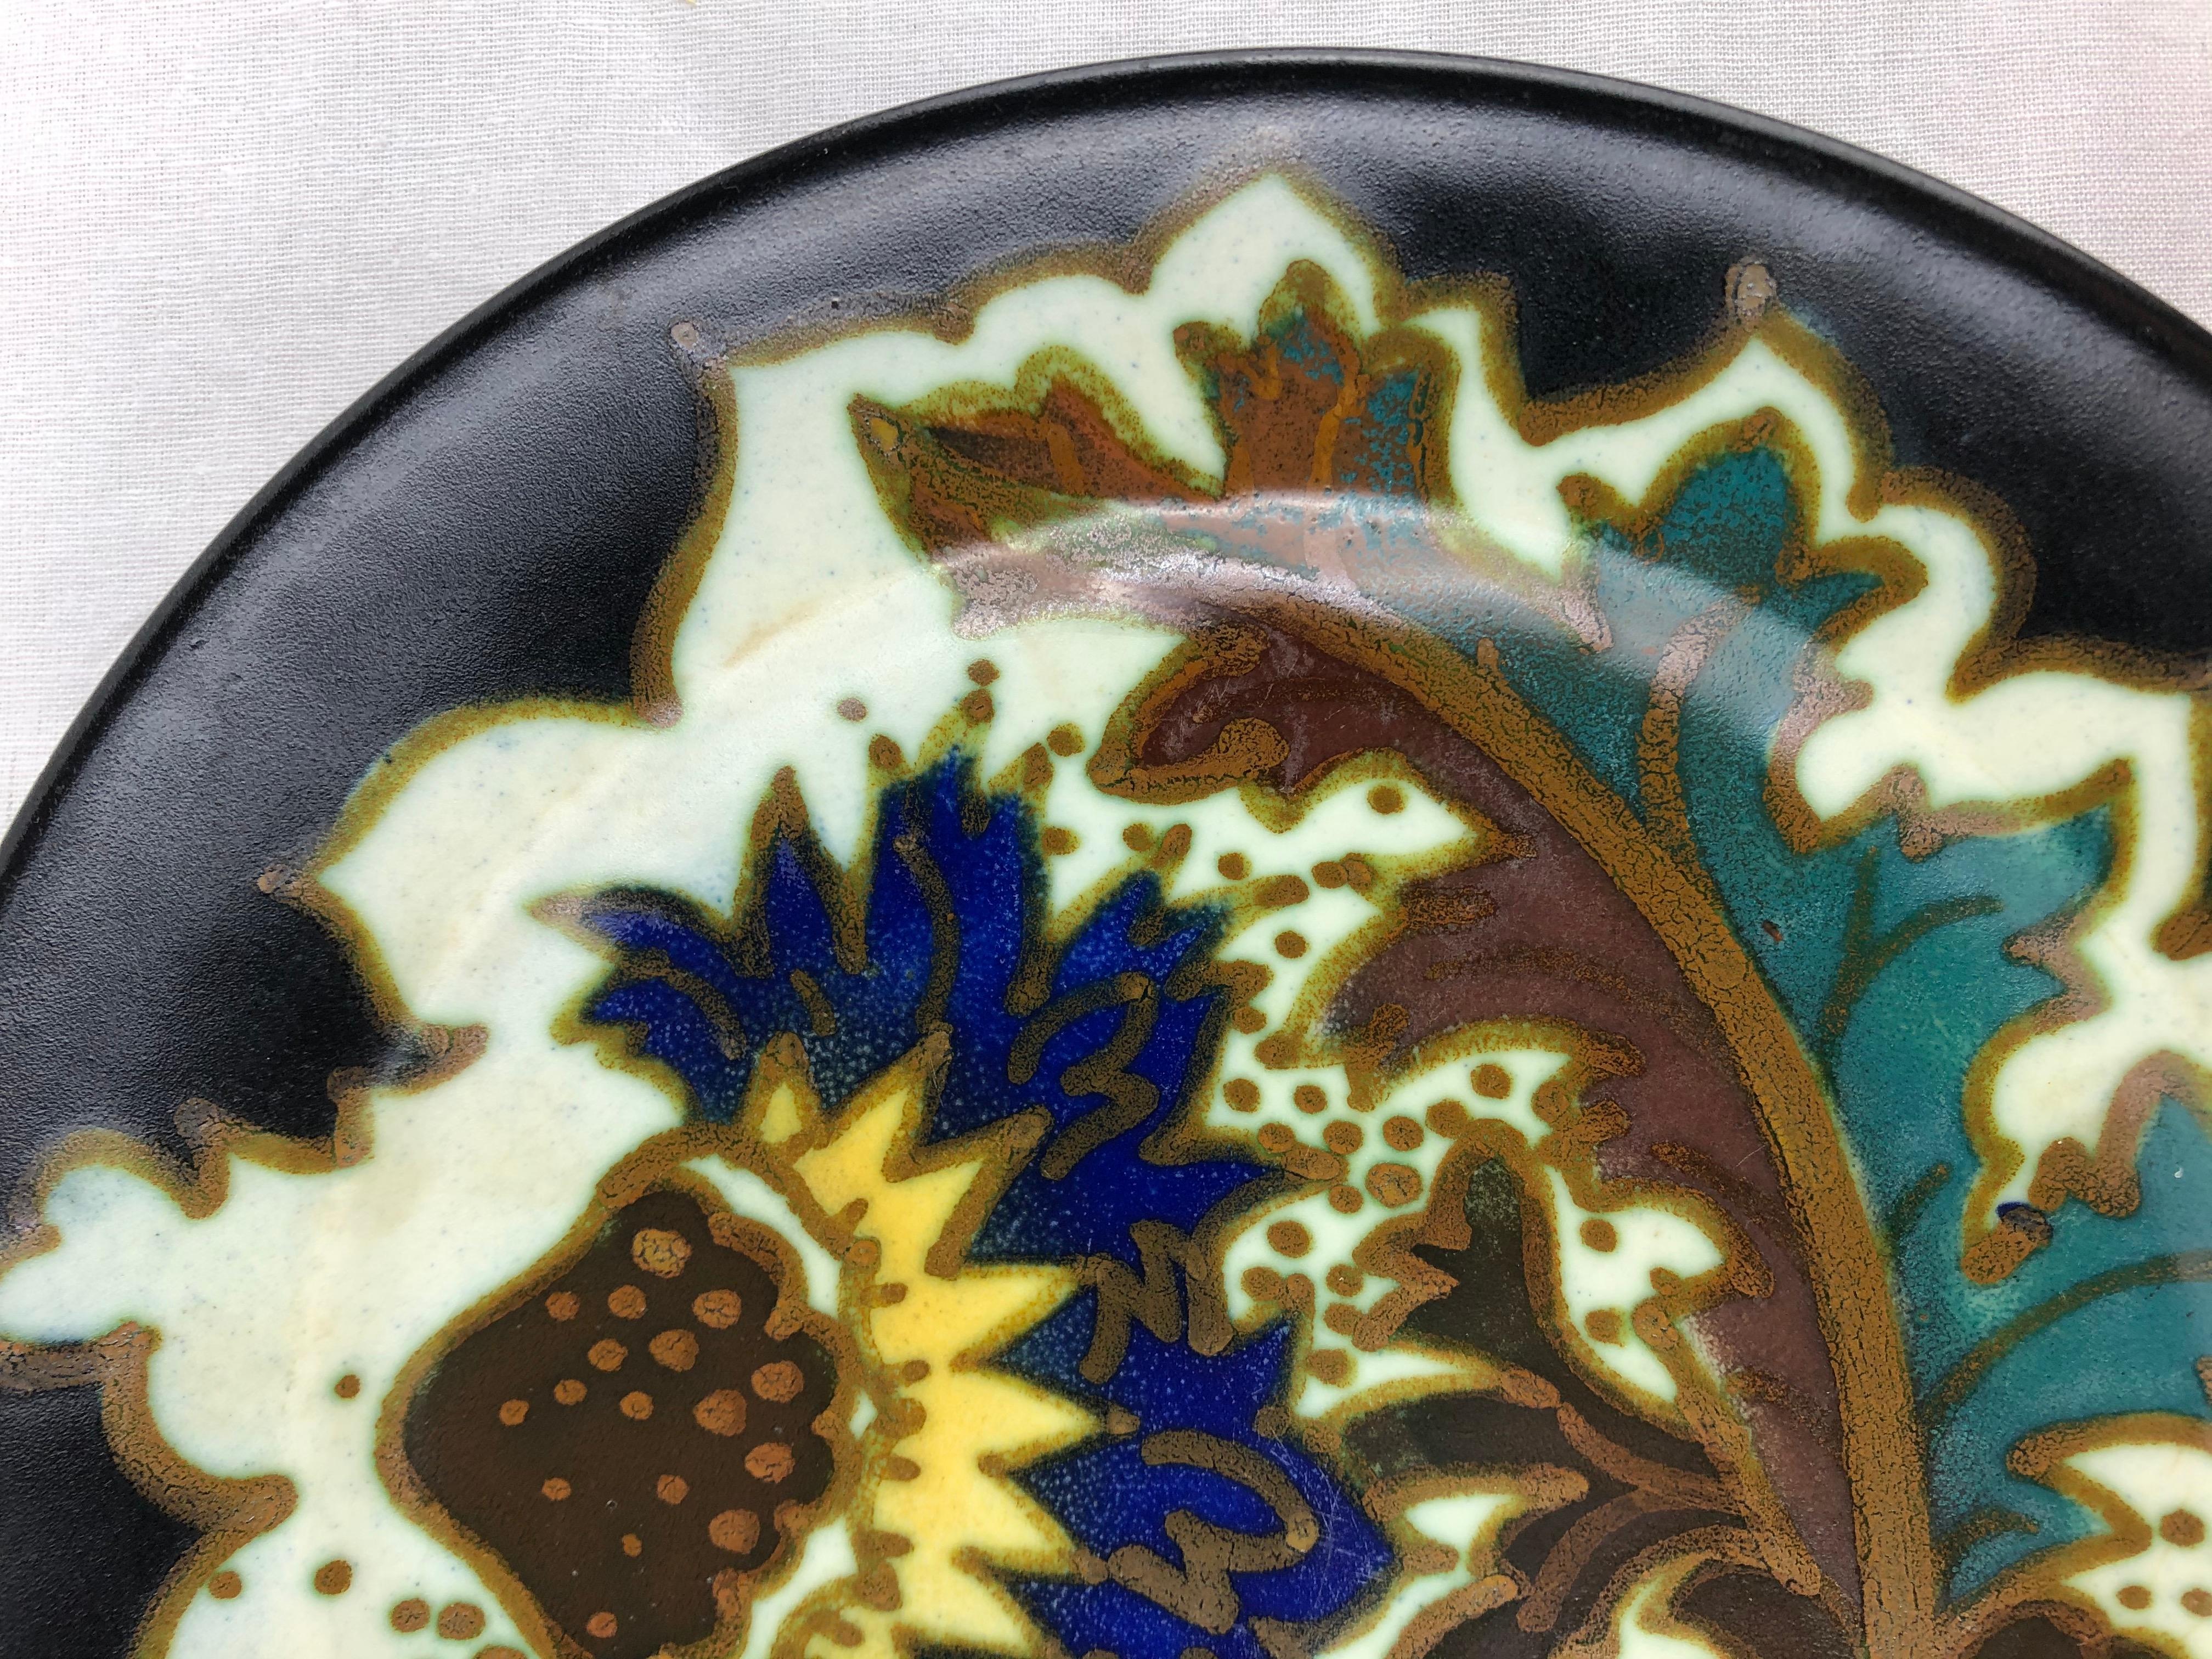 Plat hollandais en céramique Art déco de Gouda, Pays-Bas, avec des motifs floraux et curvilignes traditionnels de l'époque, vers les années 1920, glaçure mate, qui pour nous est le mélange de motifs abstraits et floraux.

Très coloré et agréable à